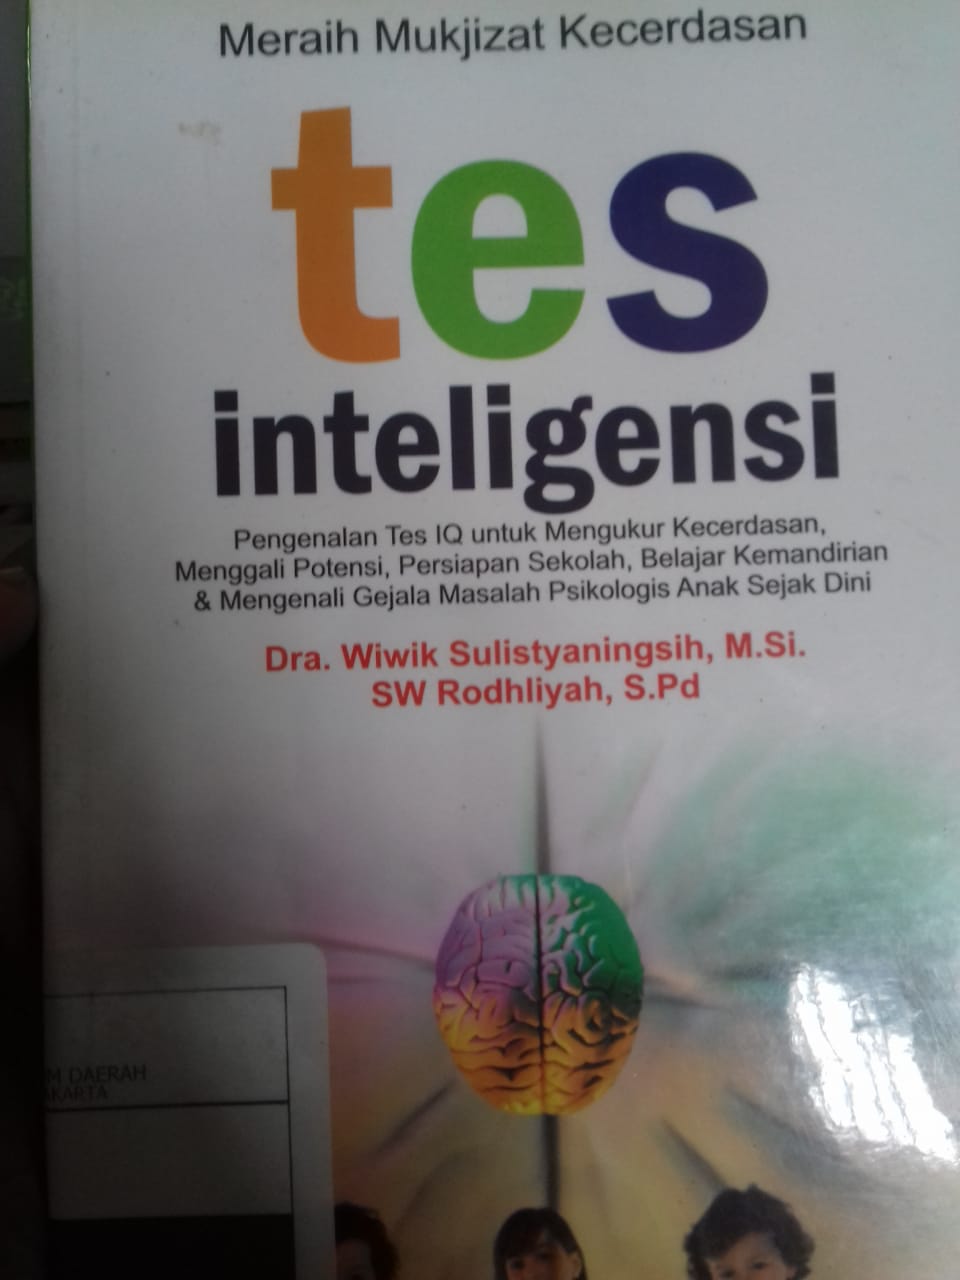 Tes Inteligensi :  Pengenalan Tes IQ untuk mengukur kecerdasan, menggali potensi, persiapan sekolah, belajar kemandirian dan mengenali gejala masalah psikologi anak sejak dini